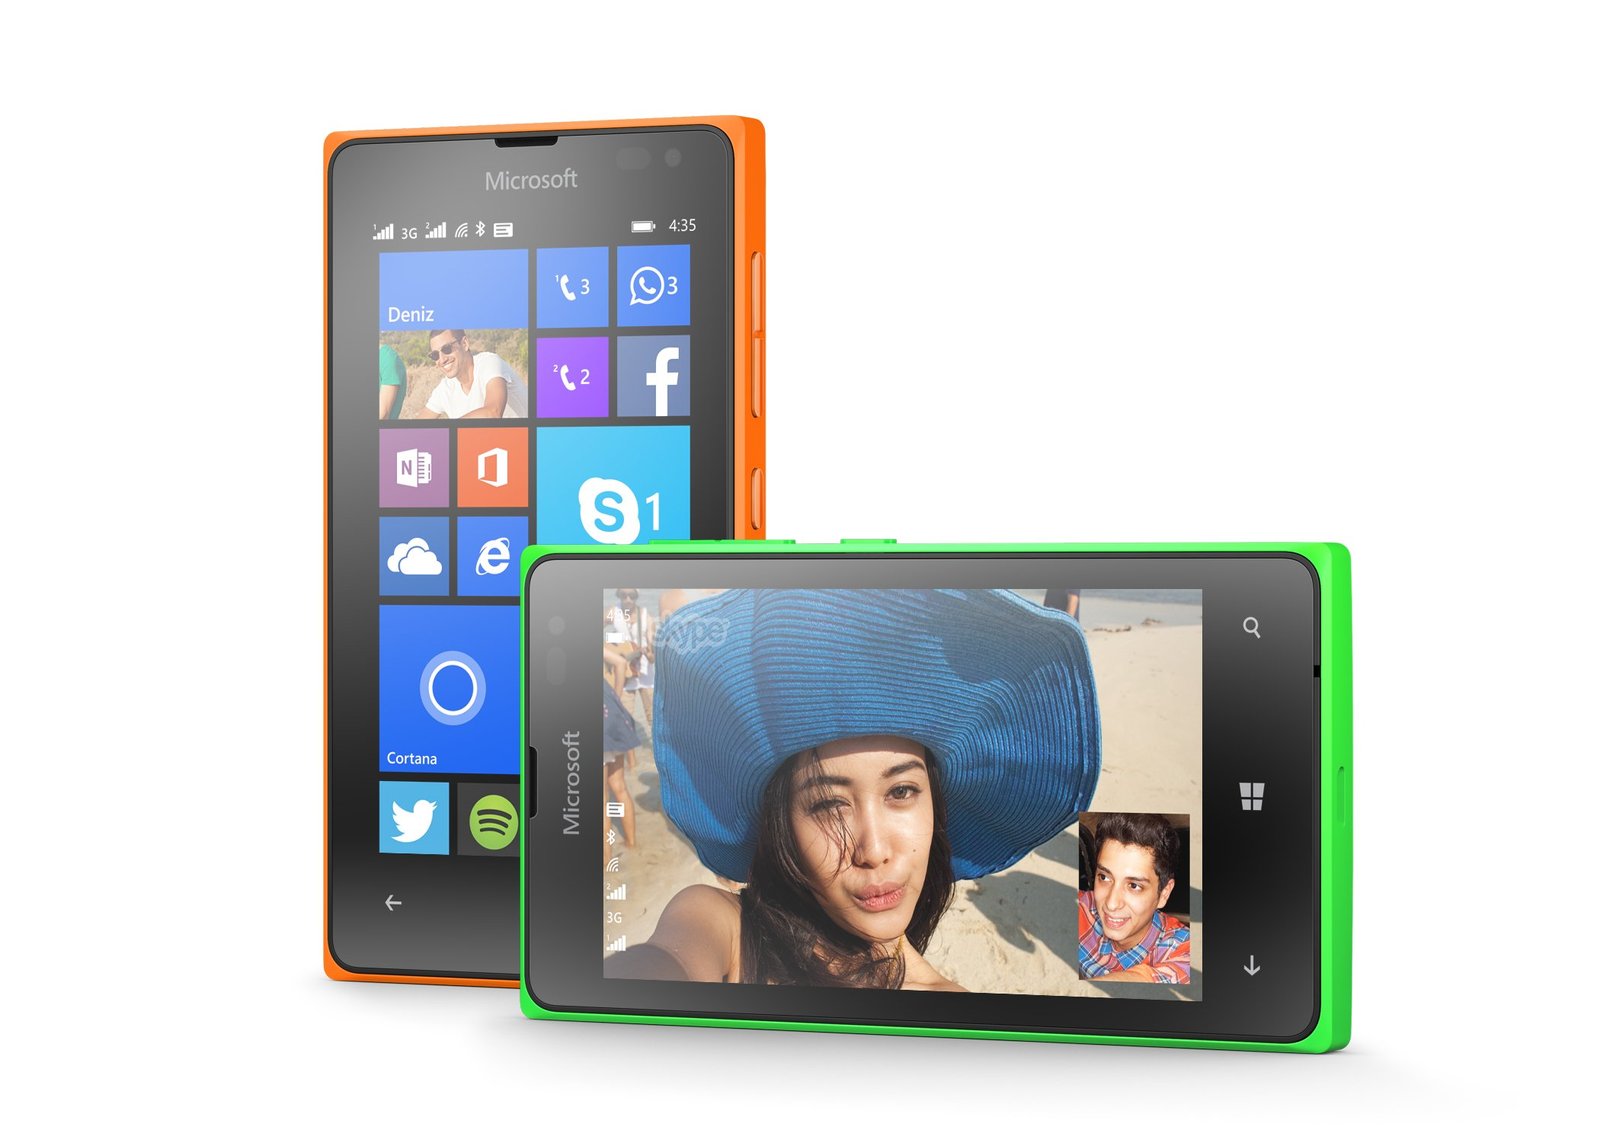 O acessível Lumia 435 Dual SIM, um preço justo em um aparelho de boa qualidade